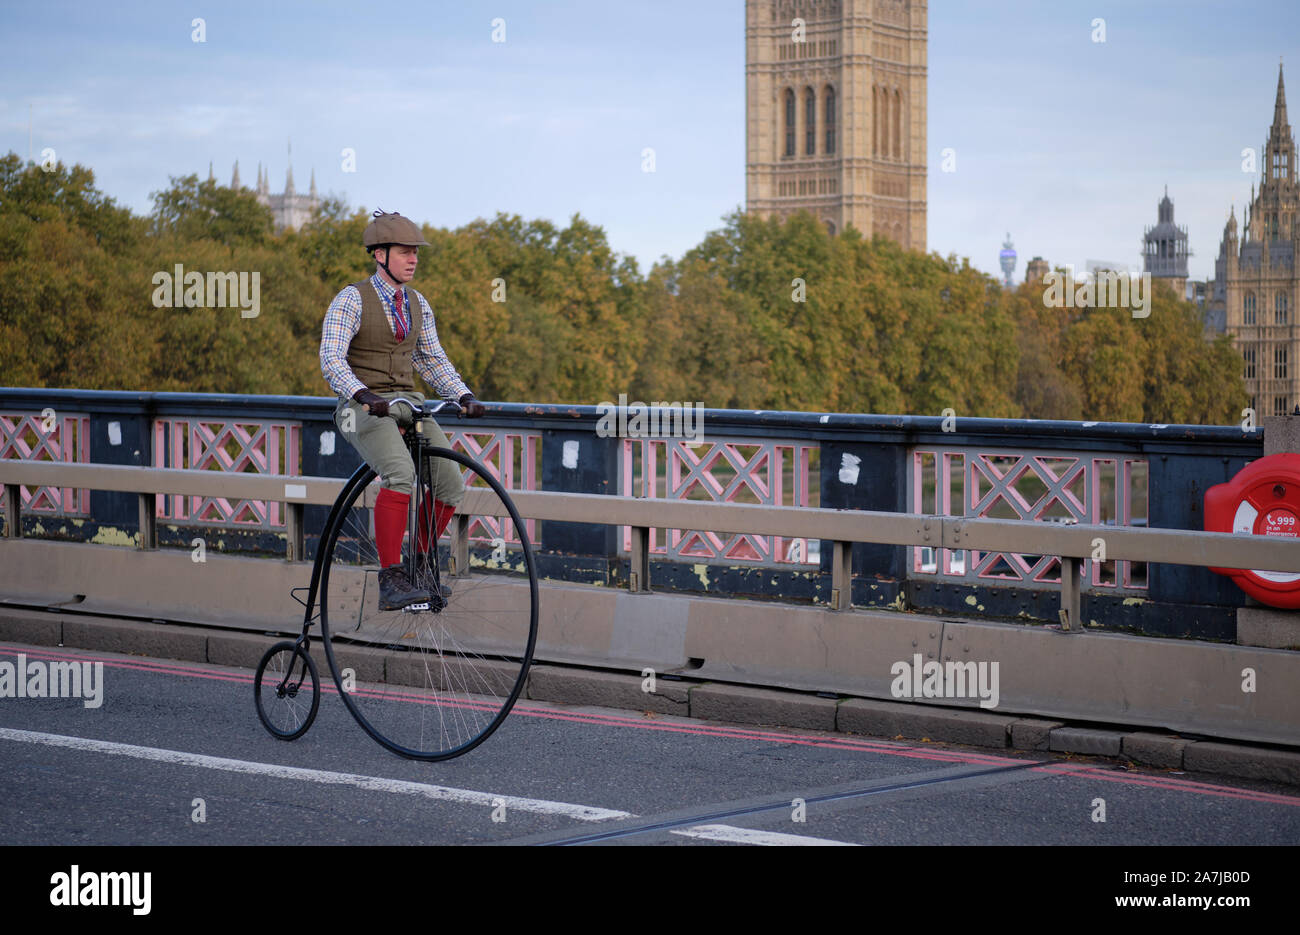 Londra, Regno Unito. 3 novembre 2019. I partecipanti alla bicicletta che attraversano il Tamigi sul Lambeth Bridge, dominato dal Westminster Palace nell'edizione di quest'anno del Bonhams London to Brighton Veteran Car Run. Foto Stock